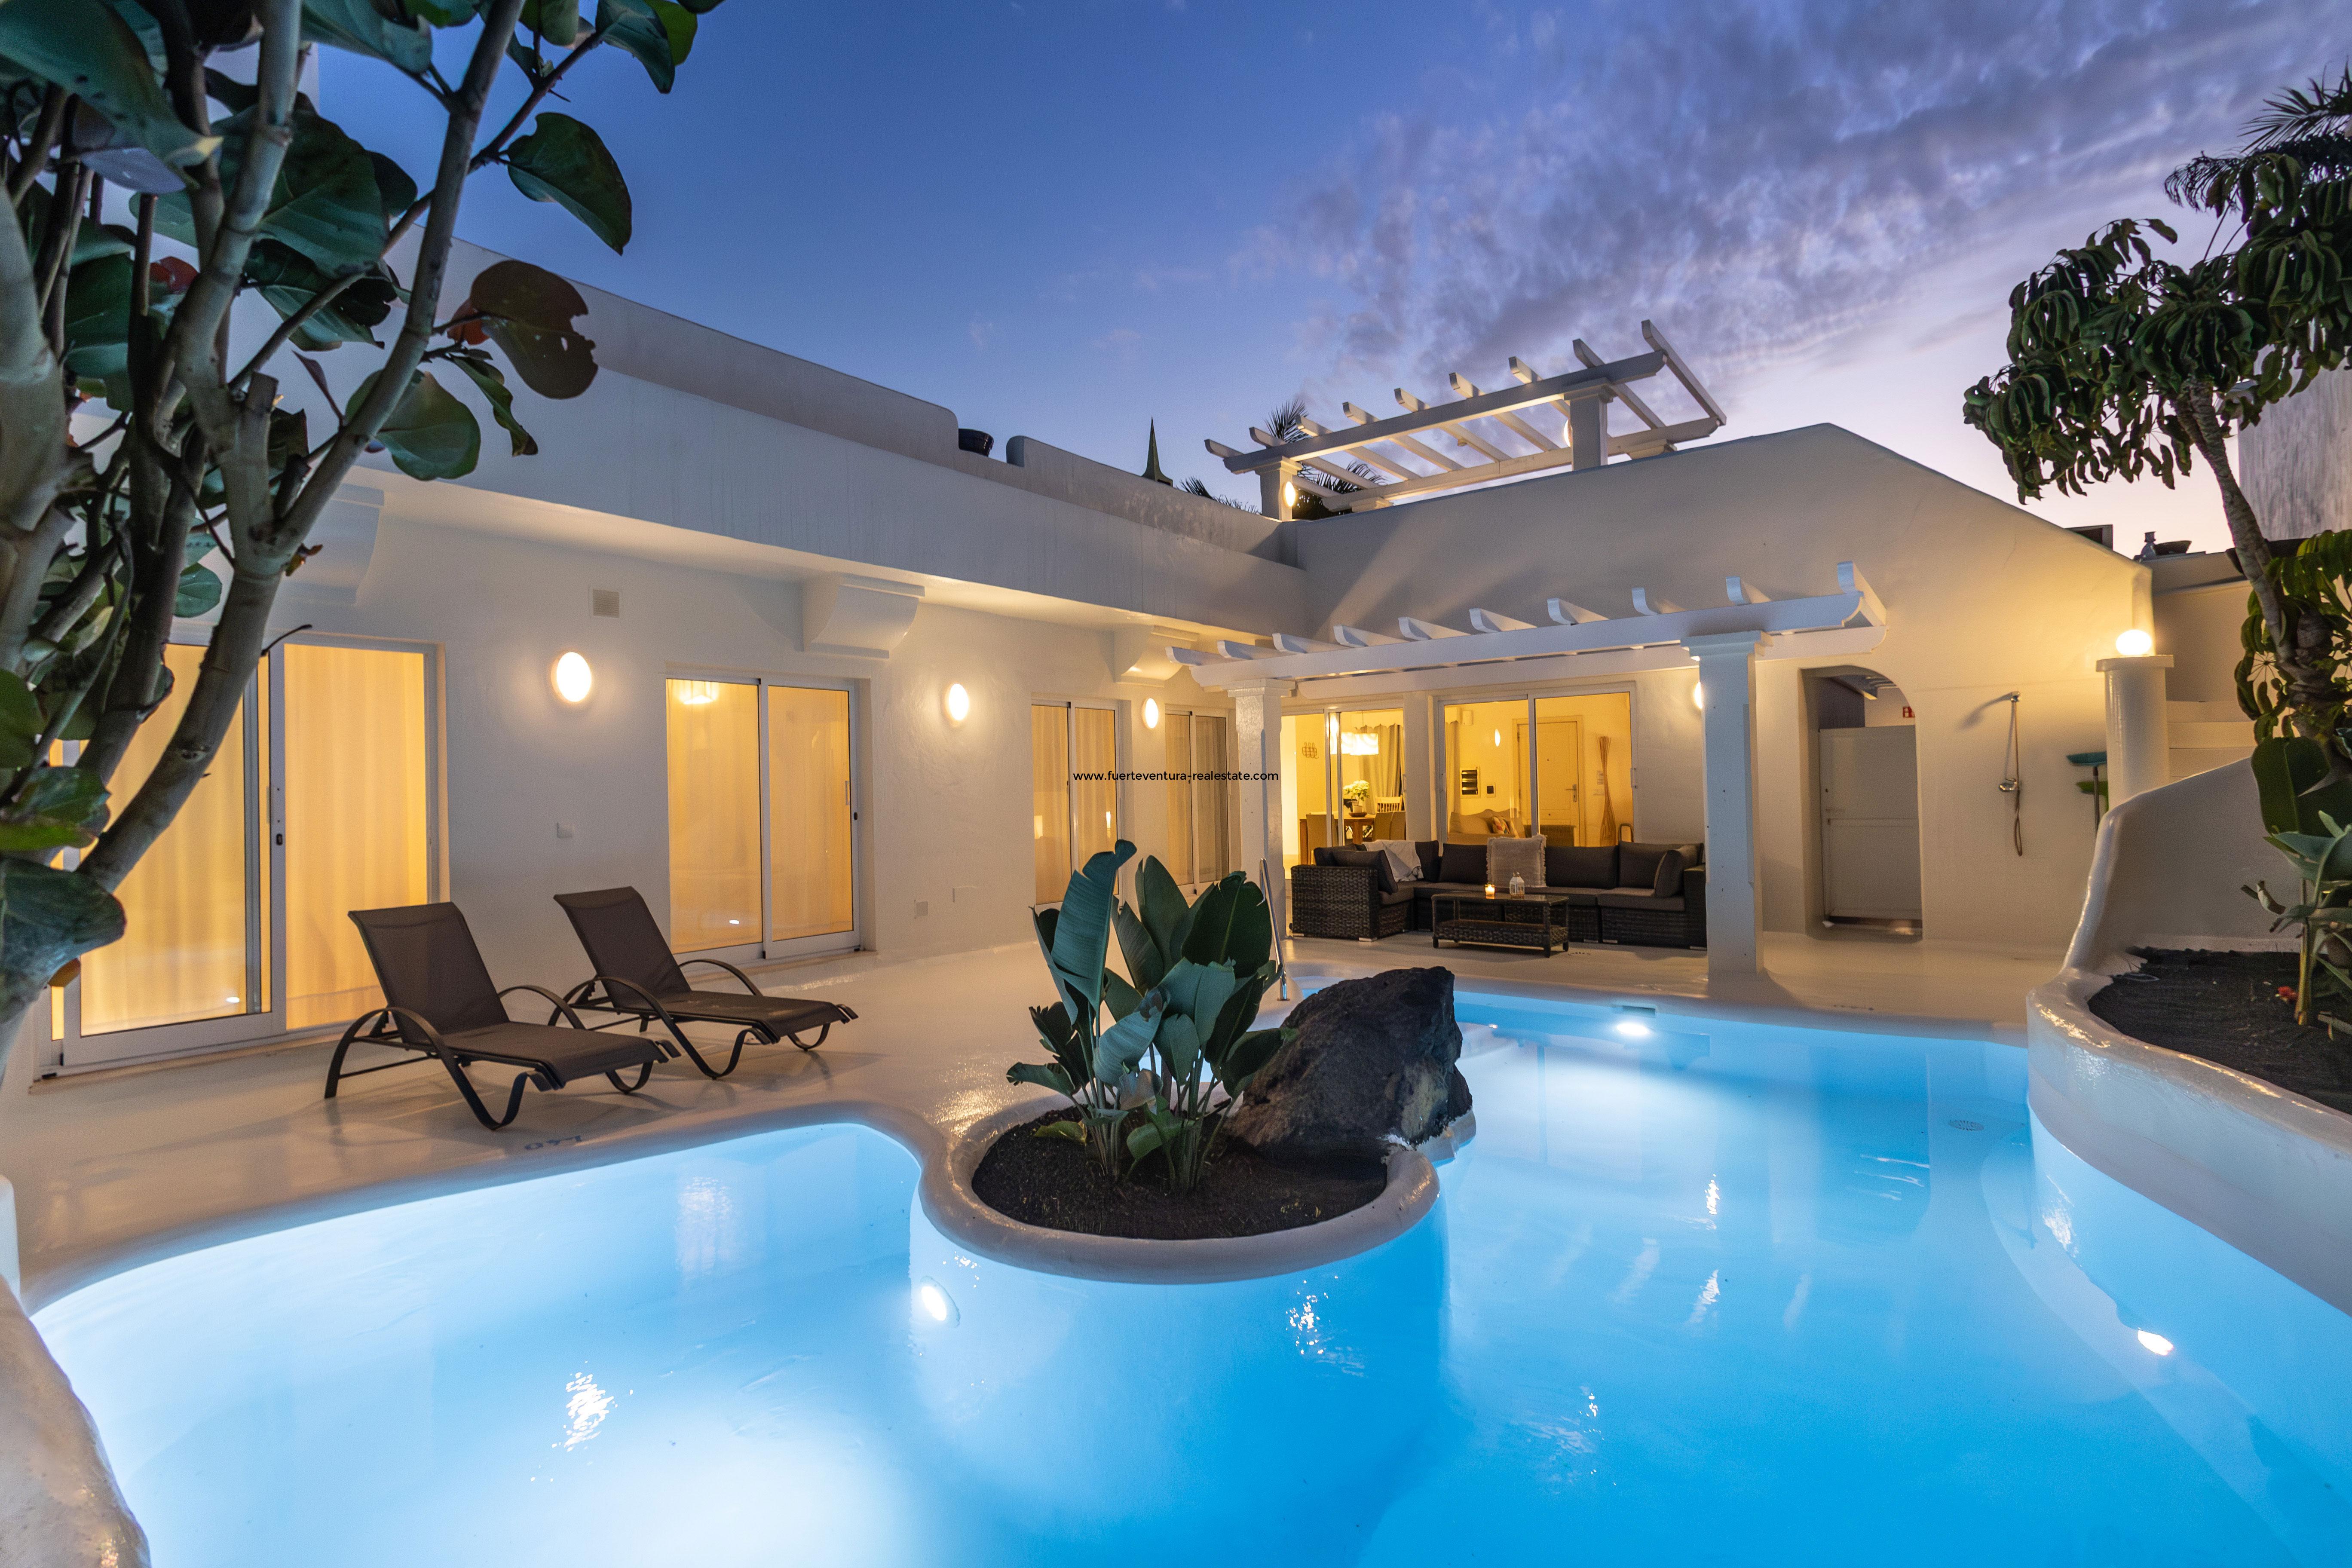 Verkaufen eine sehr schöne Villa mit Pool und Whirlpool in der Anlage Bahia Azul in Corralejo